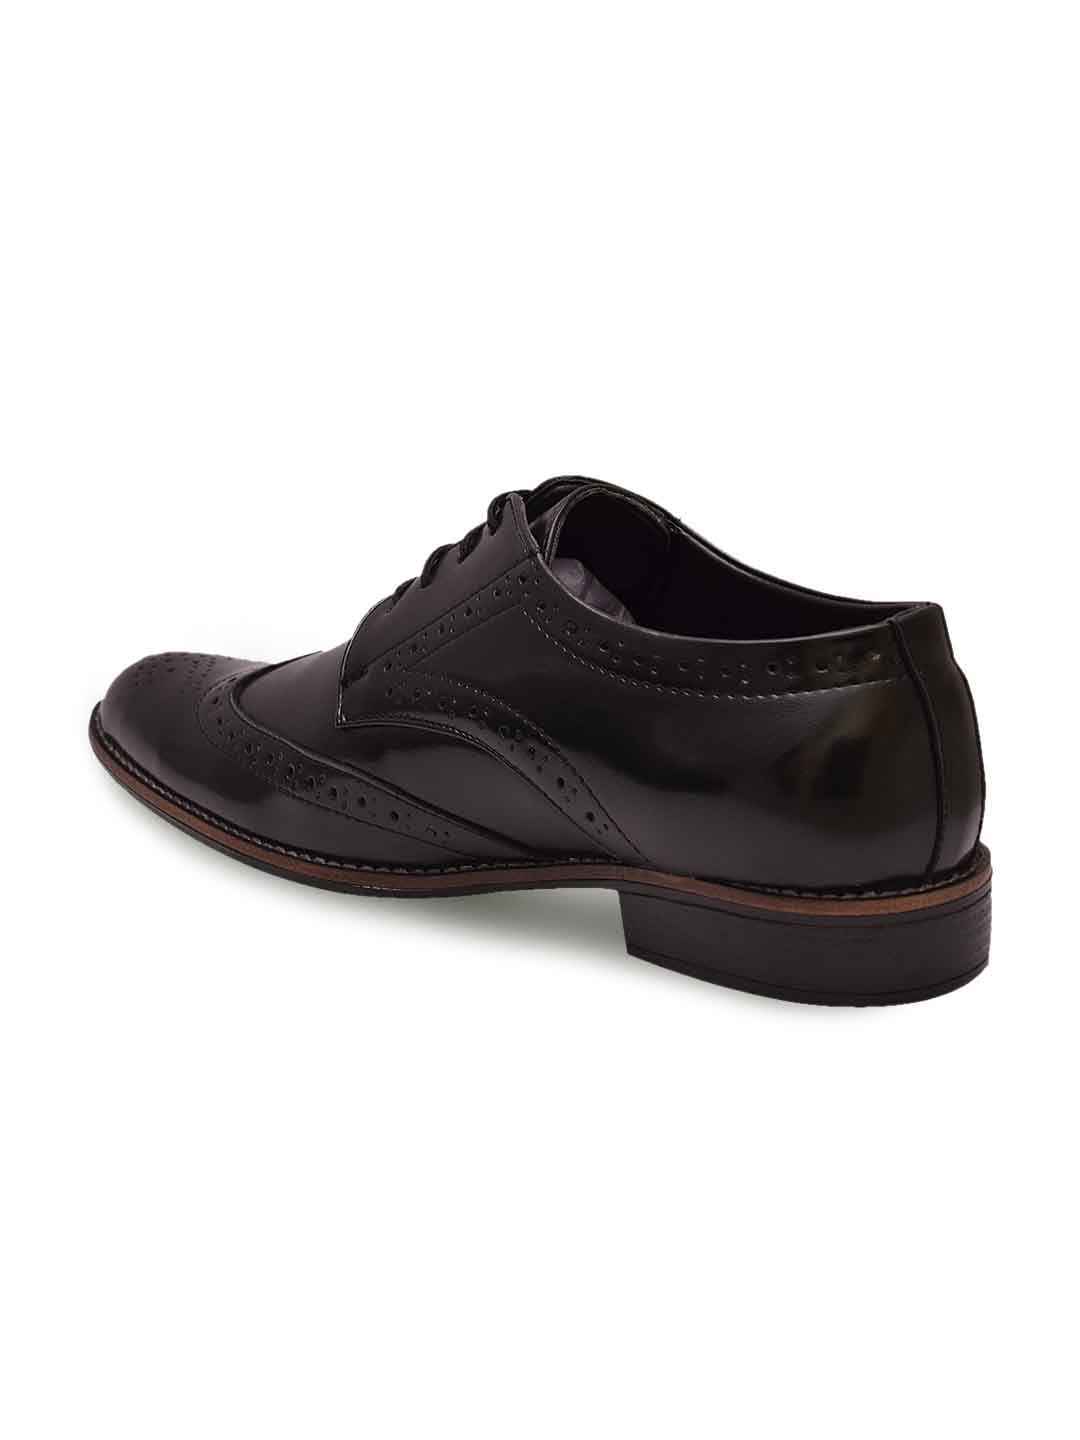 Sir-Corbett-Men-Black-Formal-Shoes